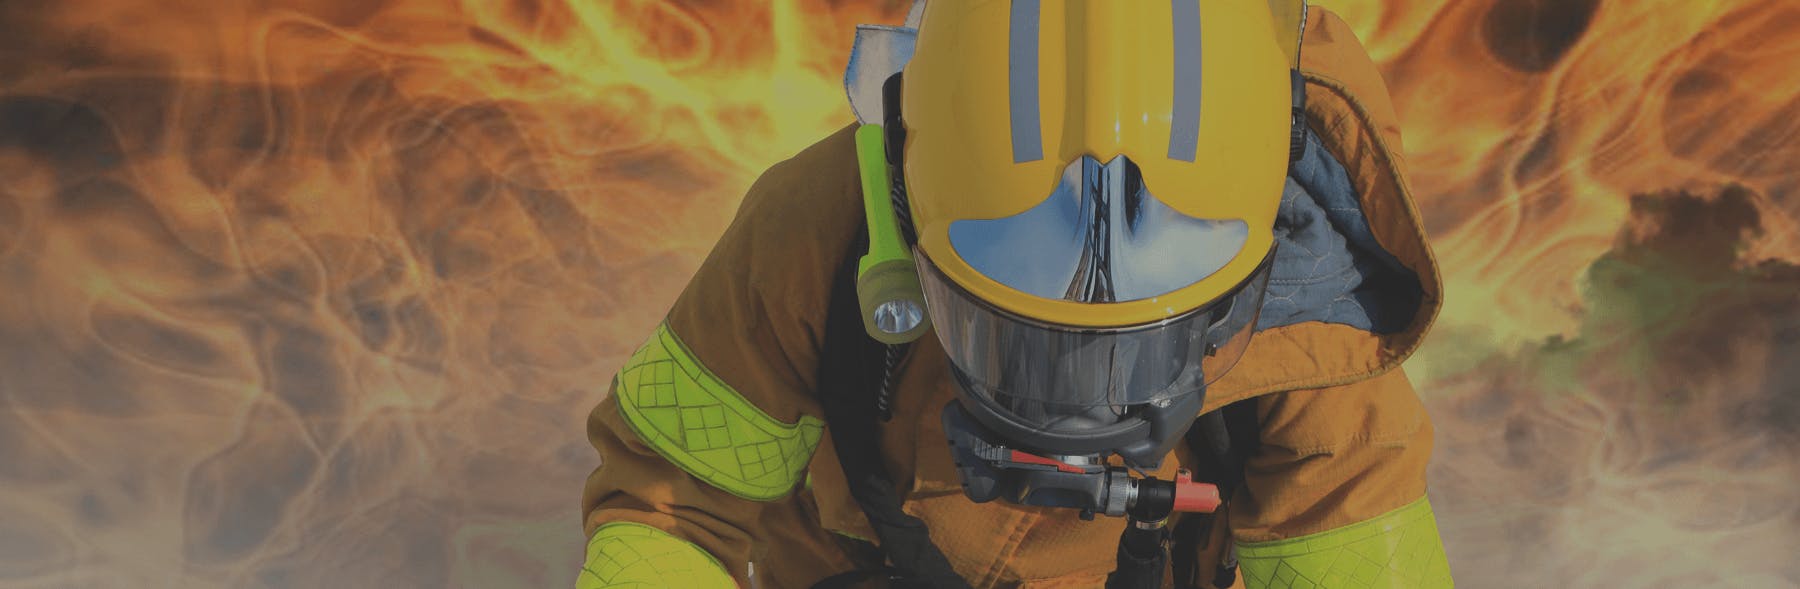 Fiche métier Sapeur-pompier : salaire, étude, rôle et compétence